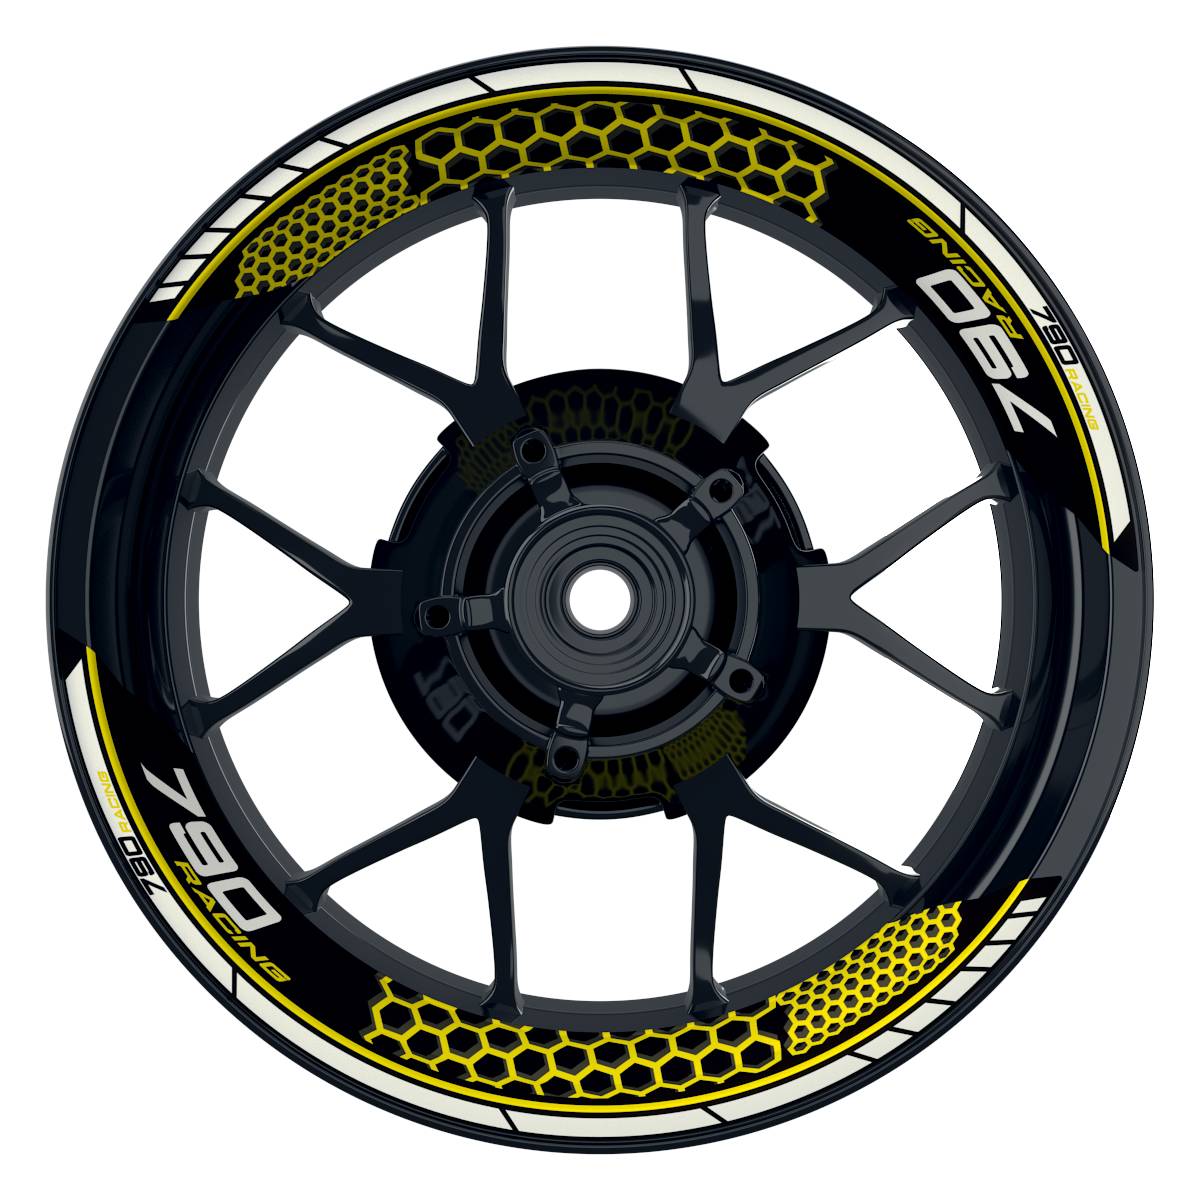 KTM Racing 790 Hexagon schwarz gelb Frontansicht